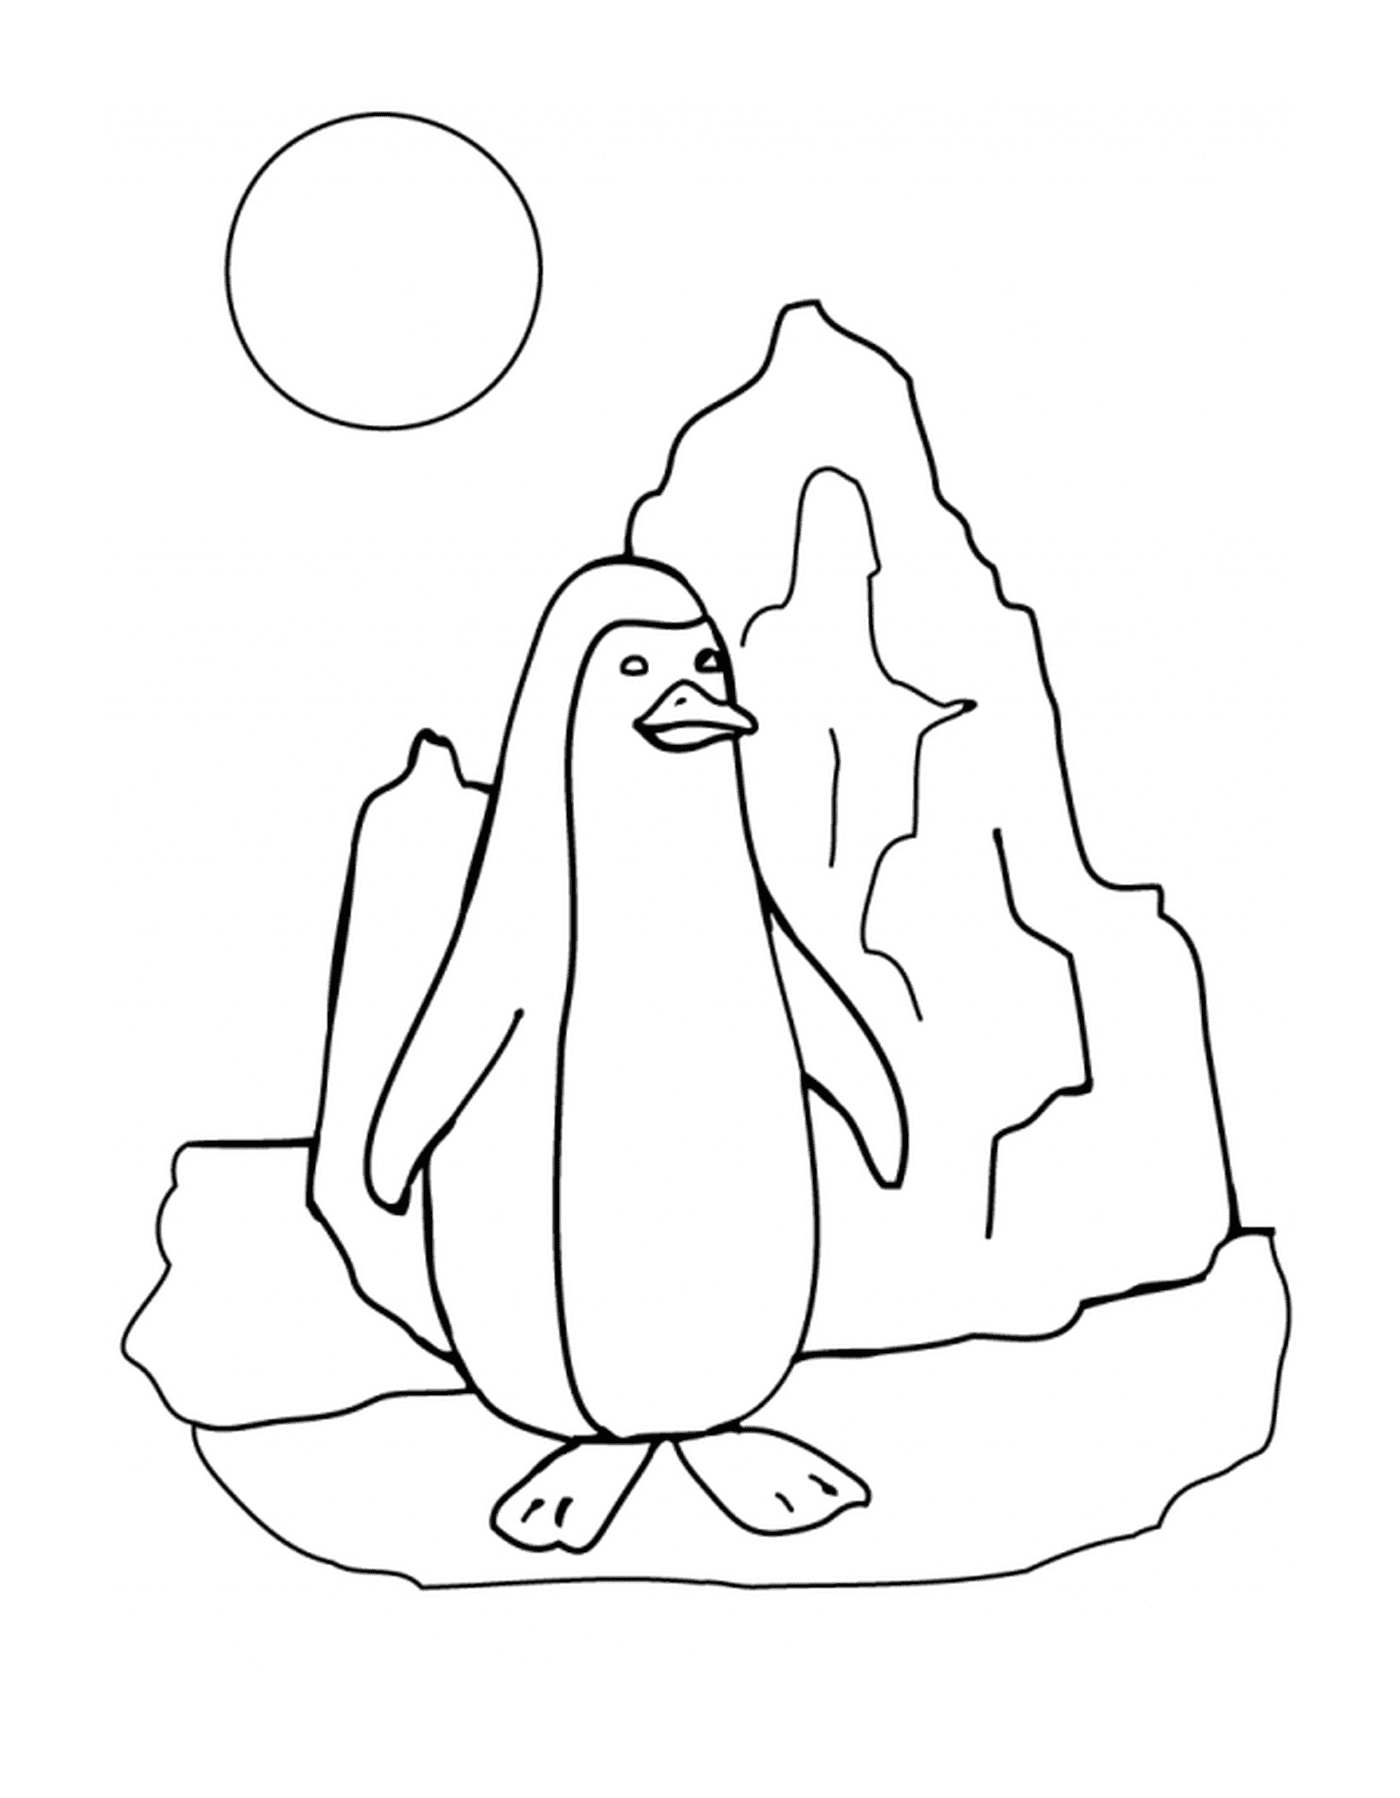  Пингвин на солнечных льдах 